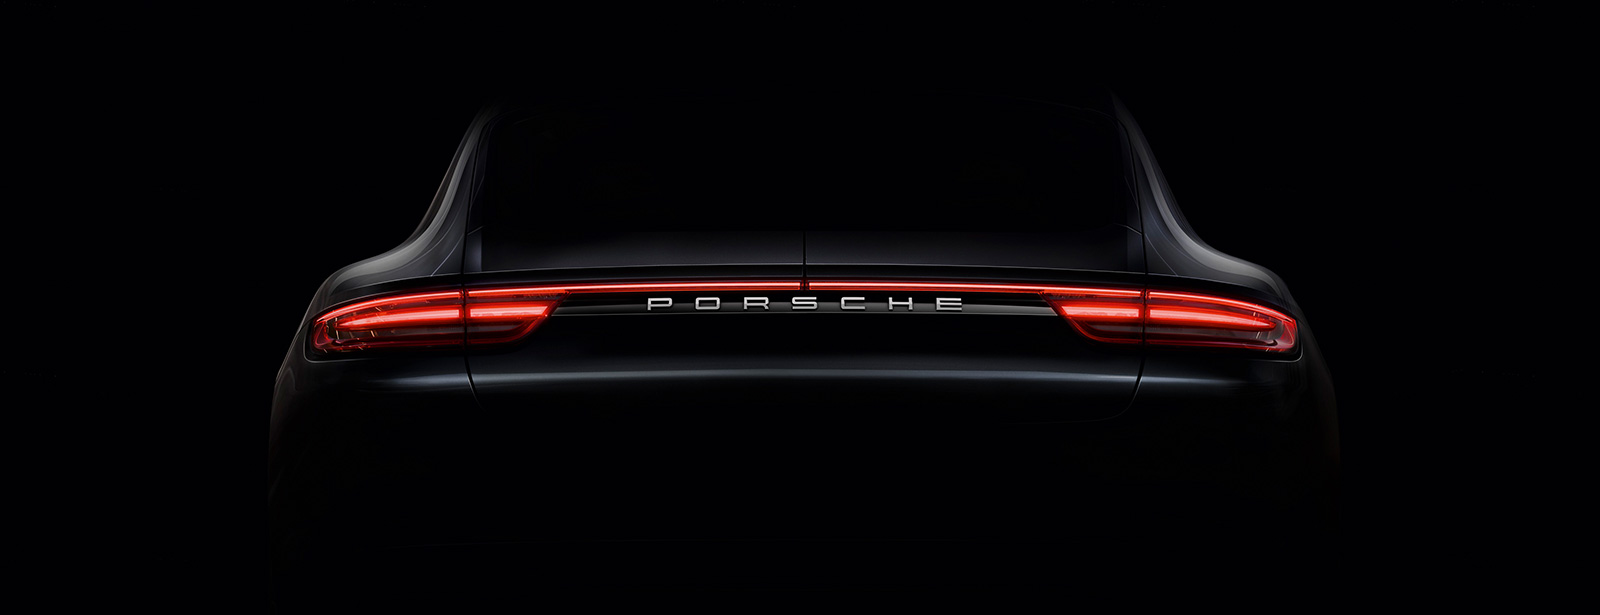 Porsche - Panamera Premium Experience Fair